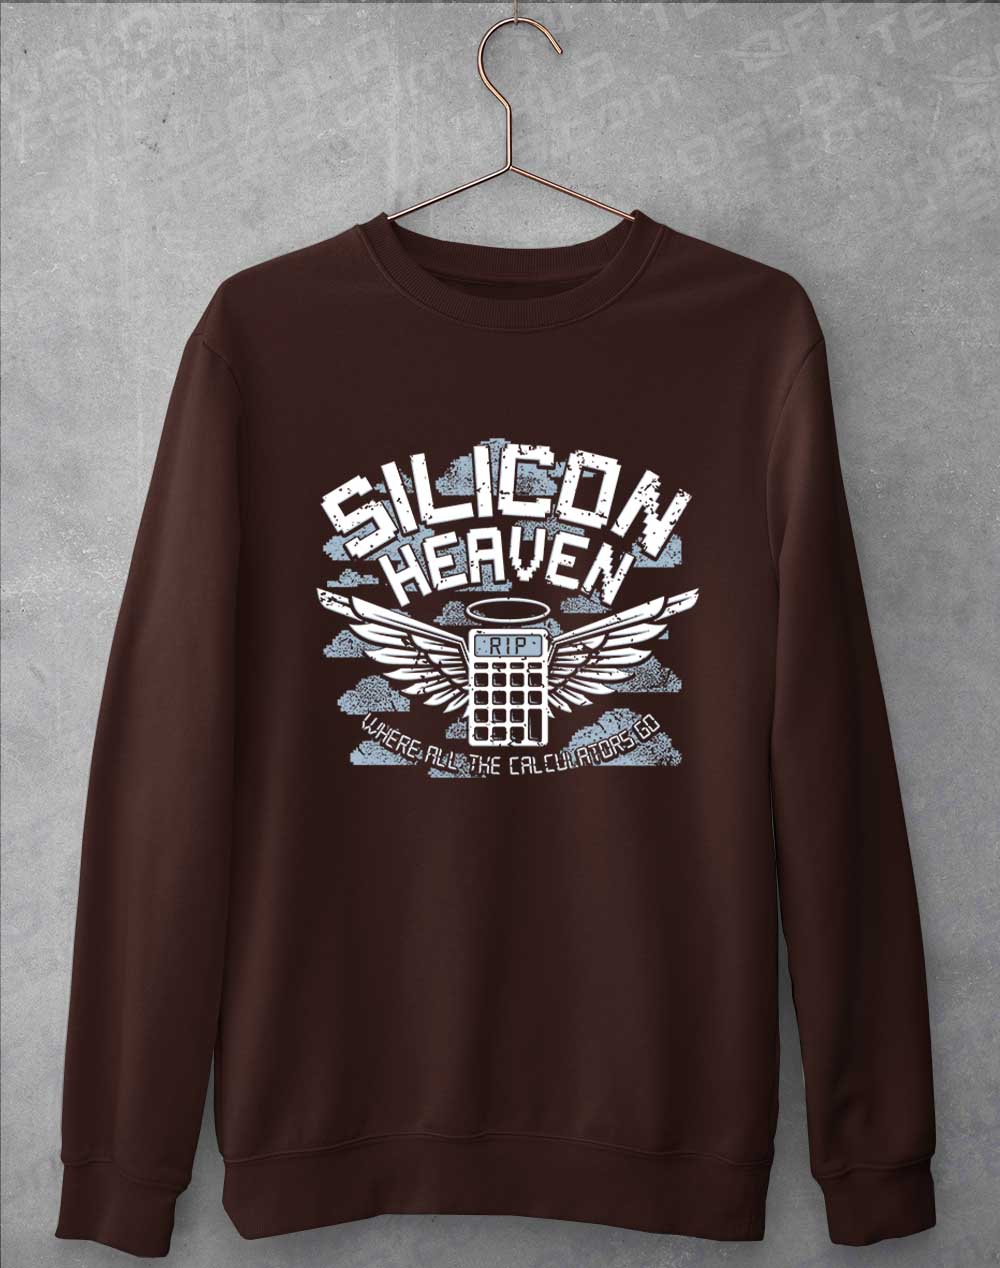 Hot Chocolate - Silicon Heaven Sweatshirt